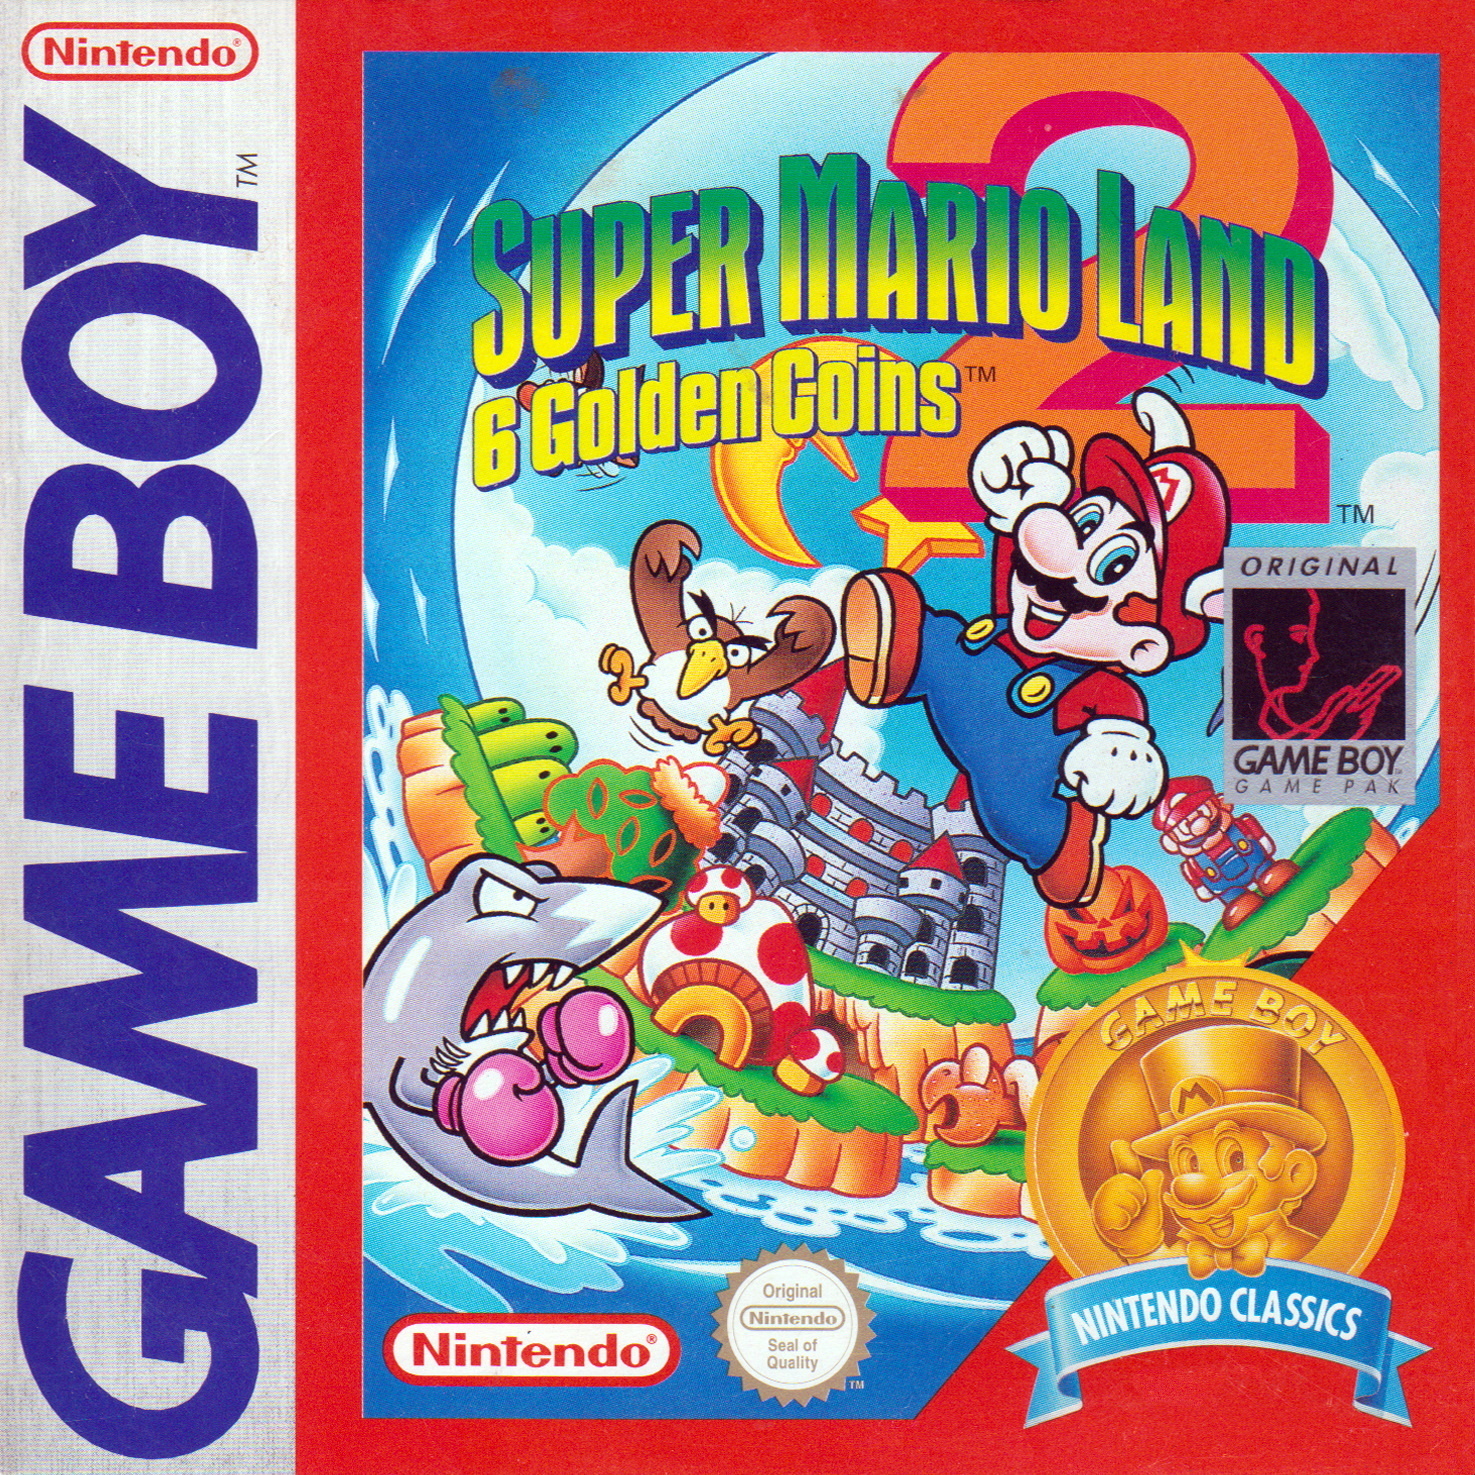 Super mario land 2 coins 6. Super Mario Land 2 6 Golden Coins. Super Mario Land Nintendo game boy. Super Mario Land 2 1992. Wario Land super Mario Land 3 3ds.